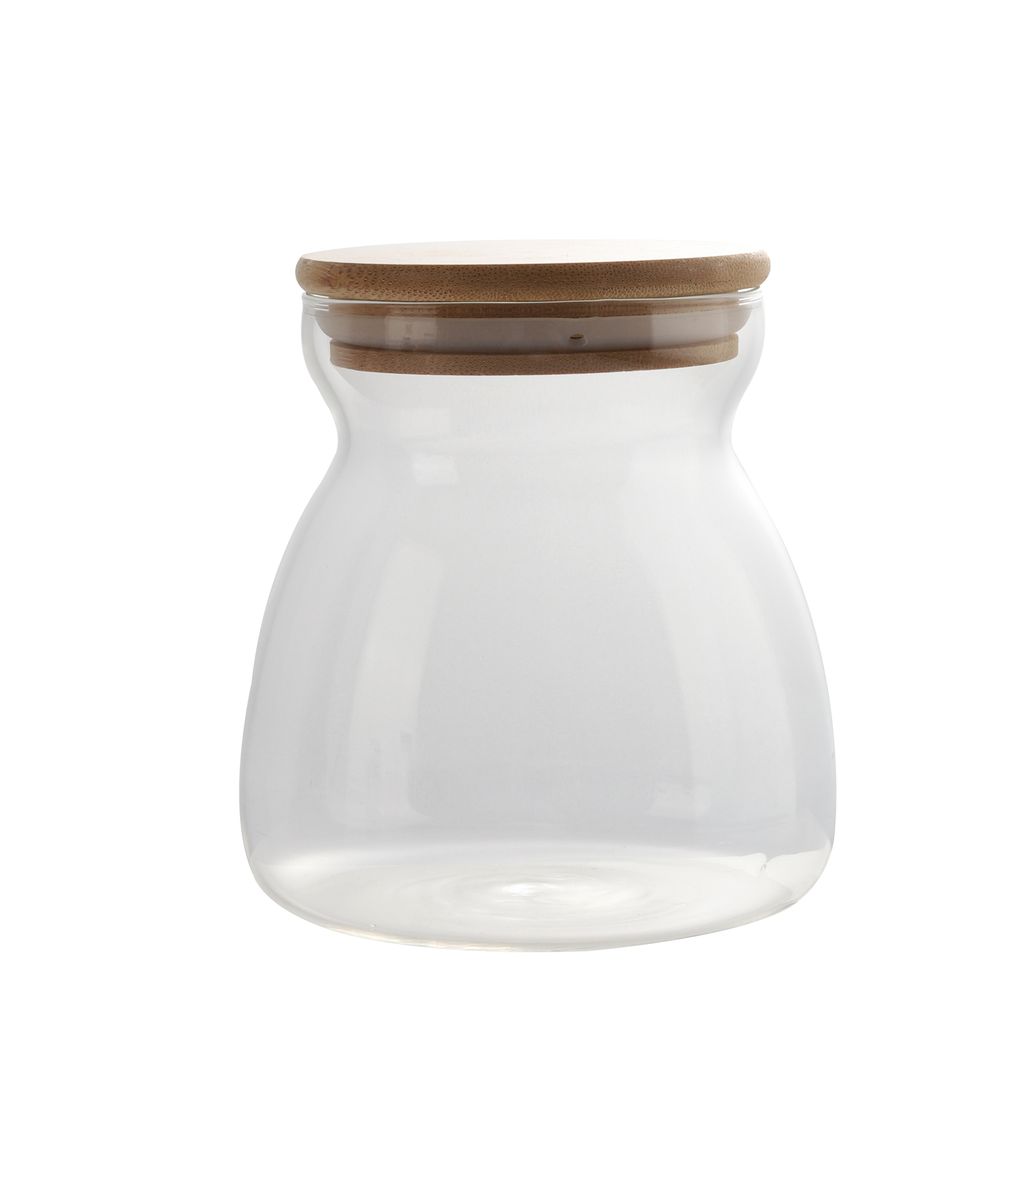 Olala Storage Jar - 600ml | Shop Today. Get it Tomorrow! | takealot.com